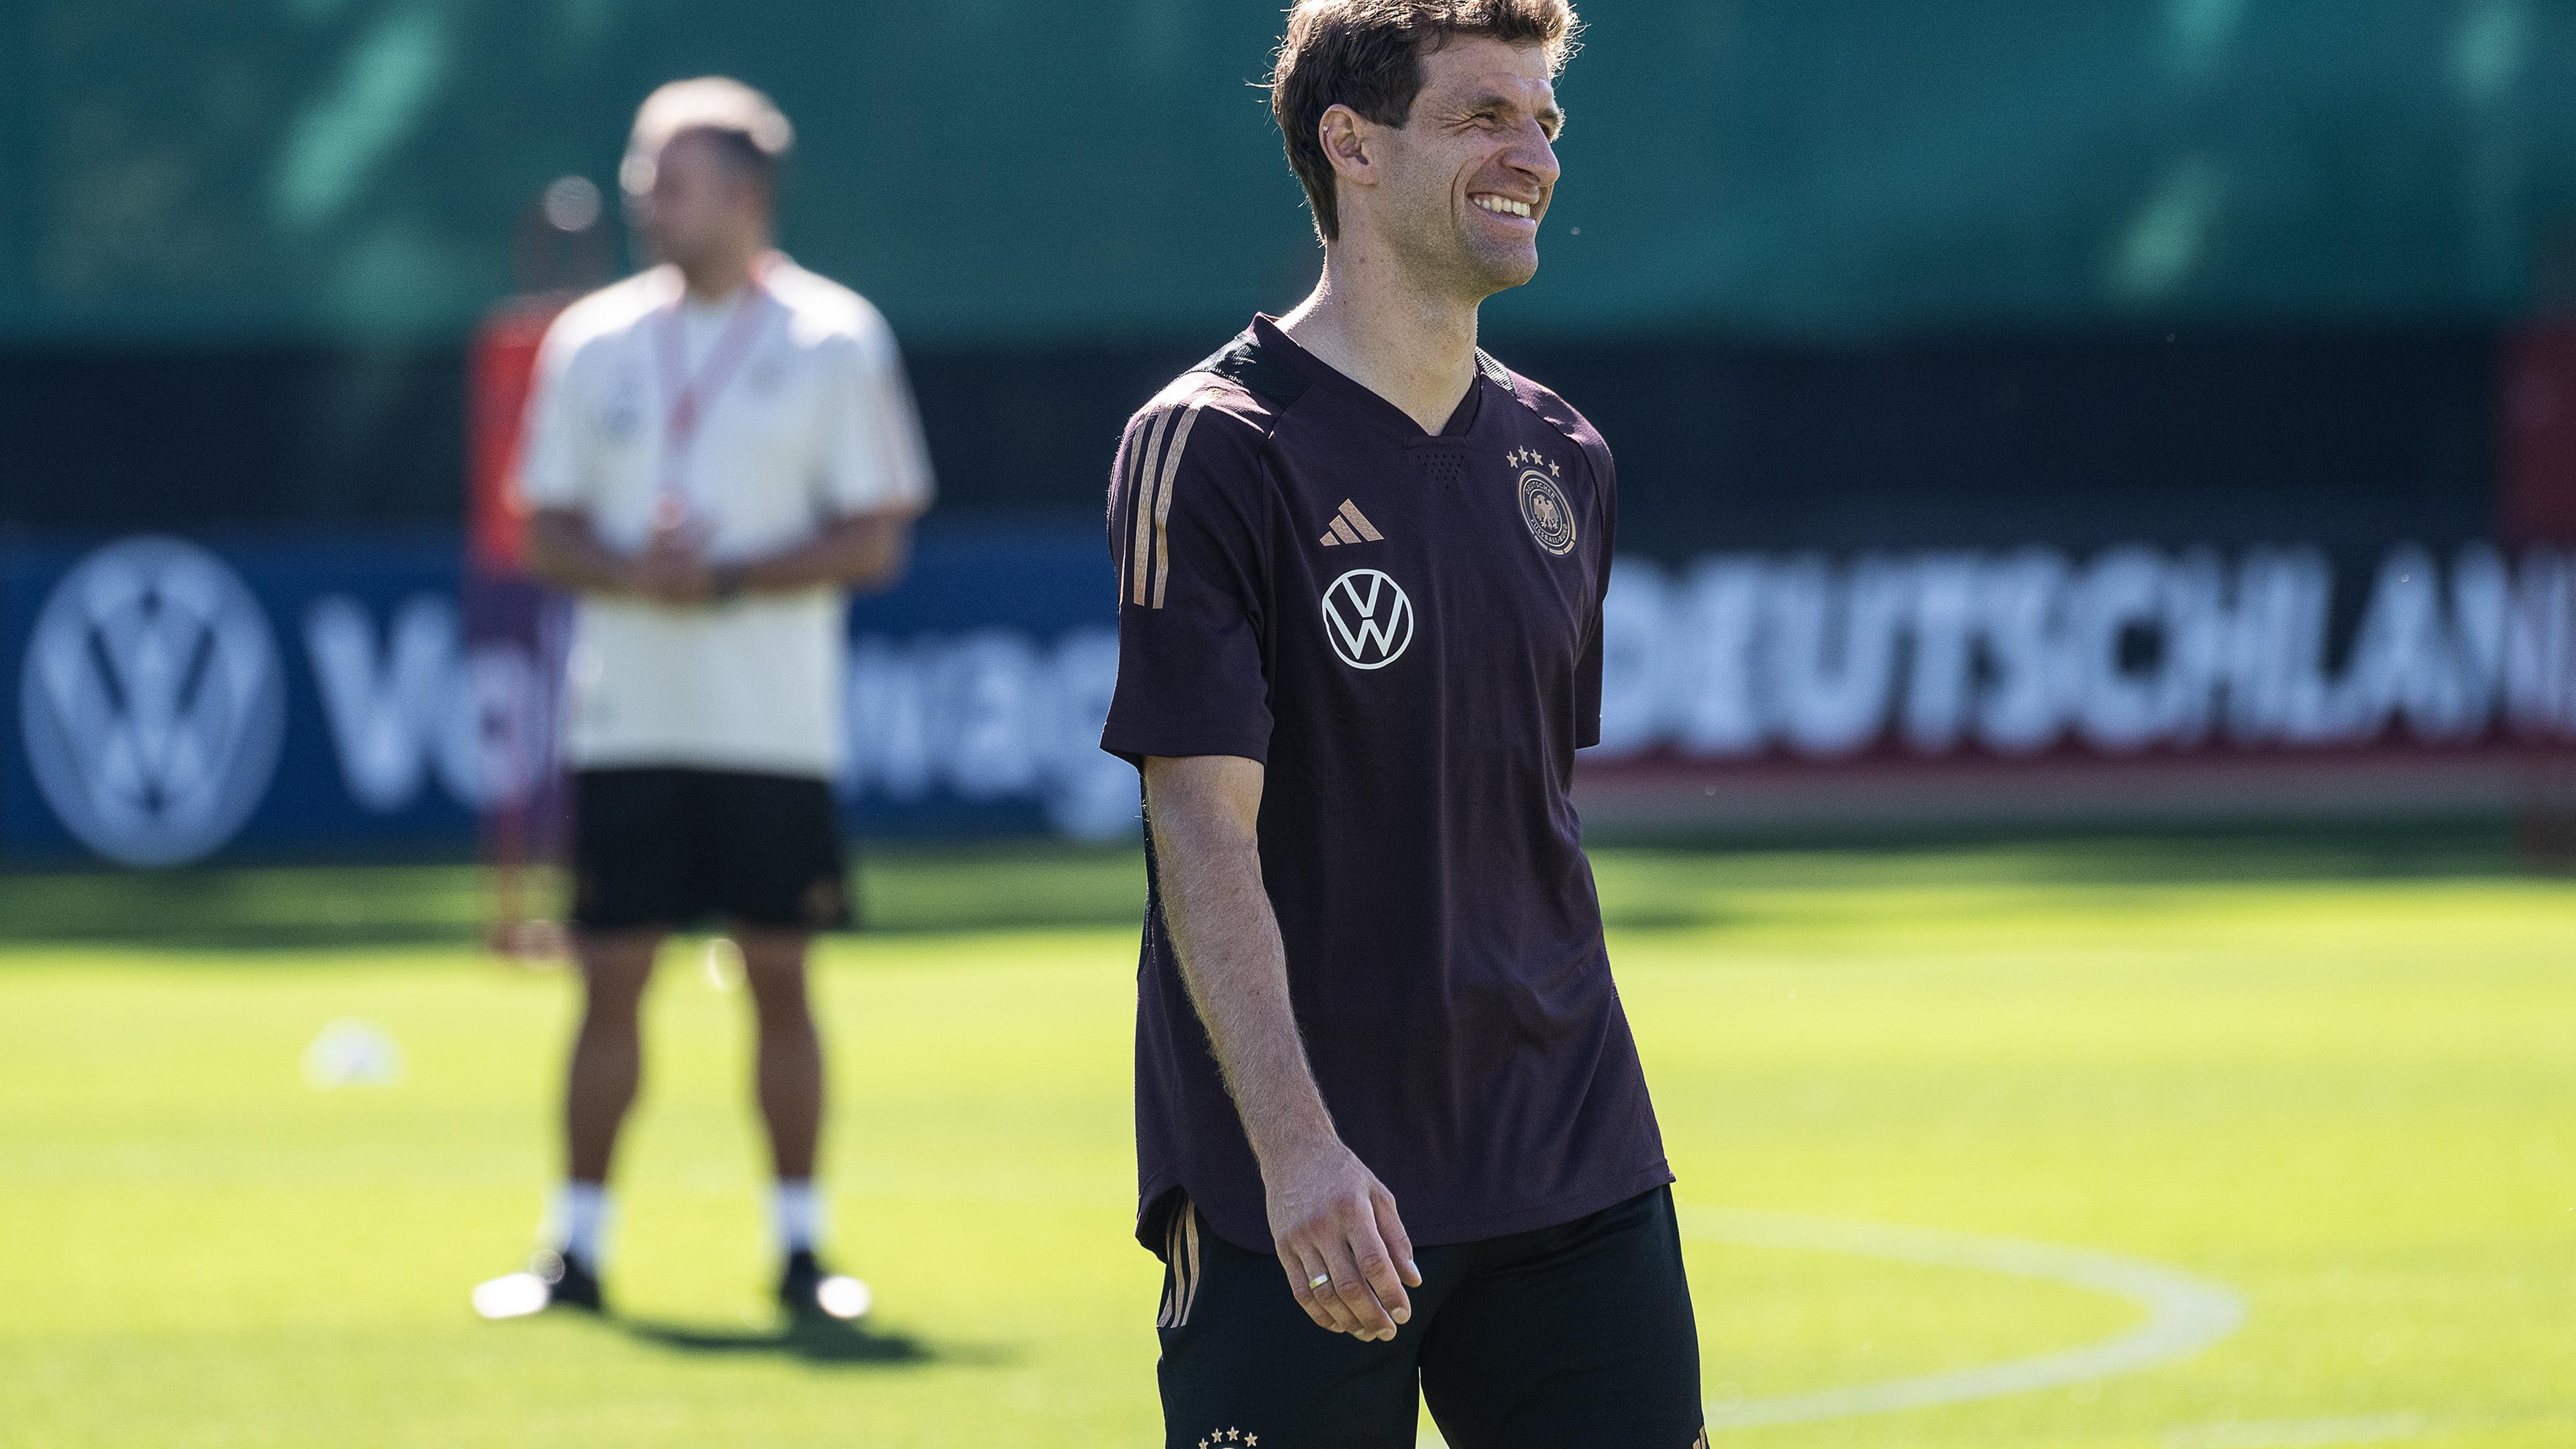 Niedersachsen, Wolfsburg: Fußball, Nationalmannschaft, vor den Länderspielen gegen Japan und Frankreich. Nationalspieler Thomas Müller lacht im Training.